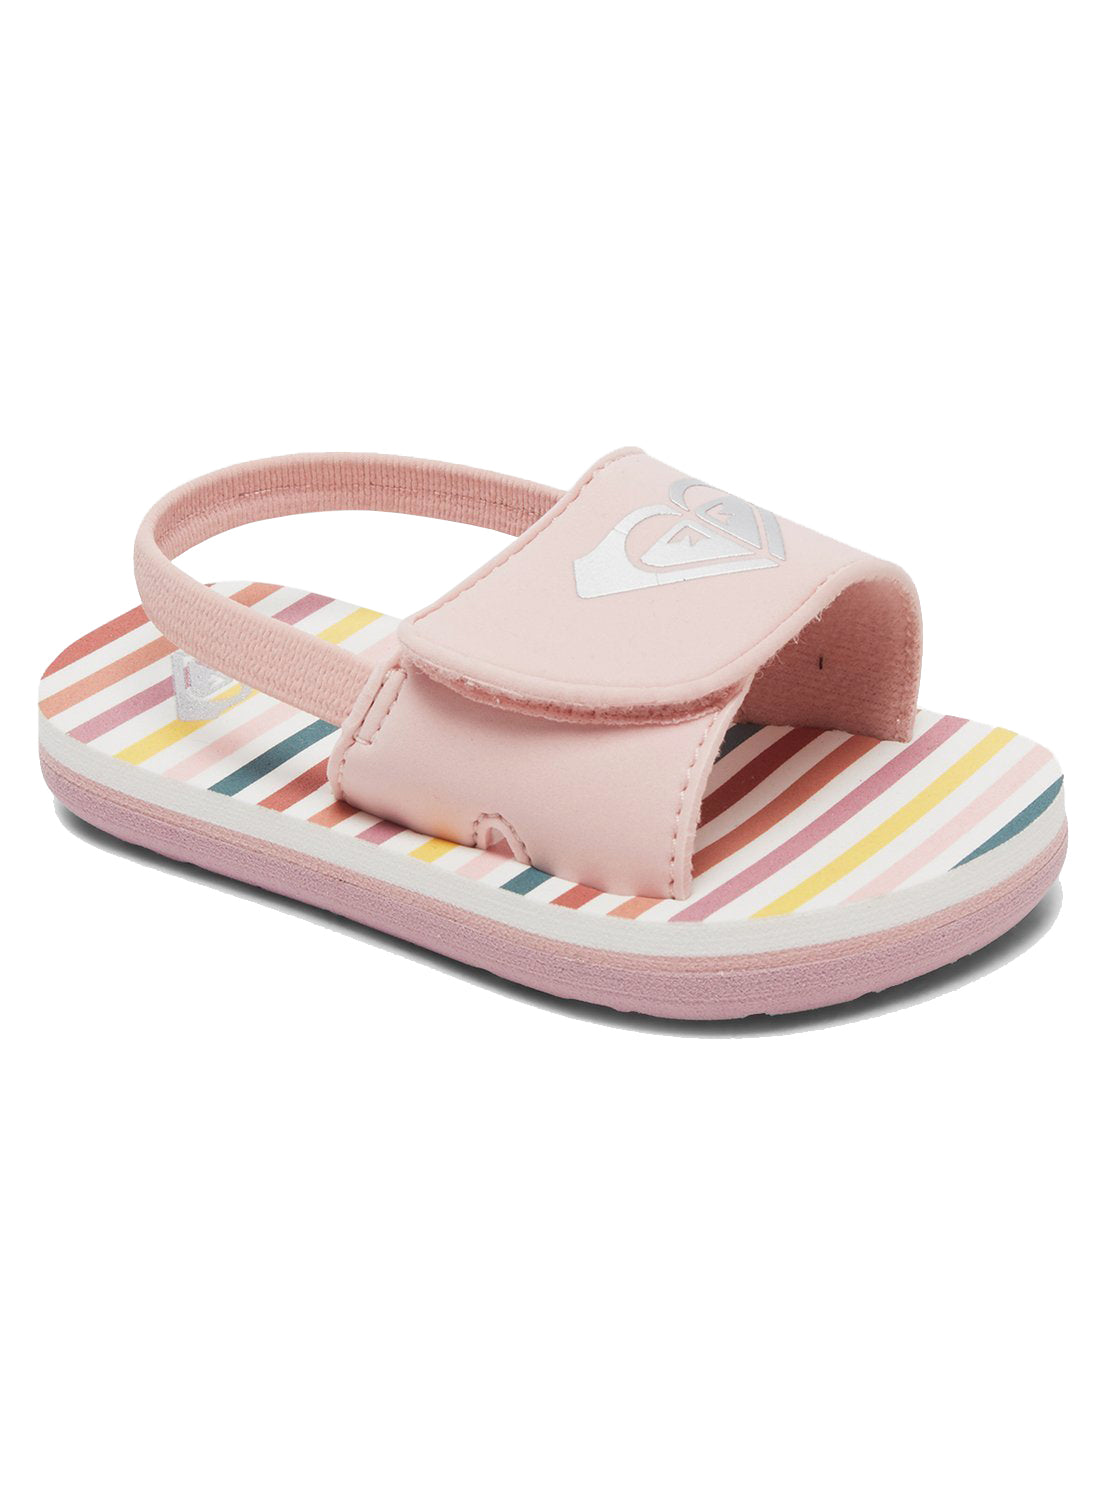 Roxy Finn Toddler Sandal PW0-Pink-White 9 C